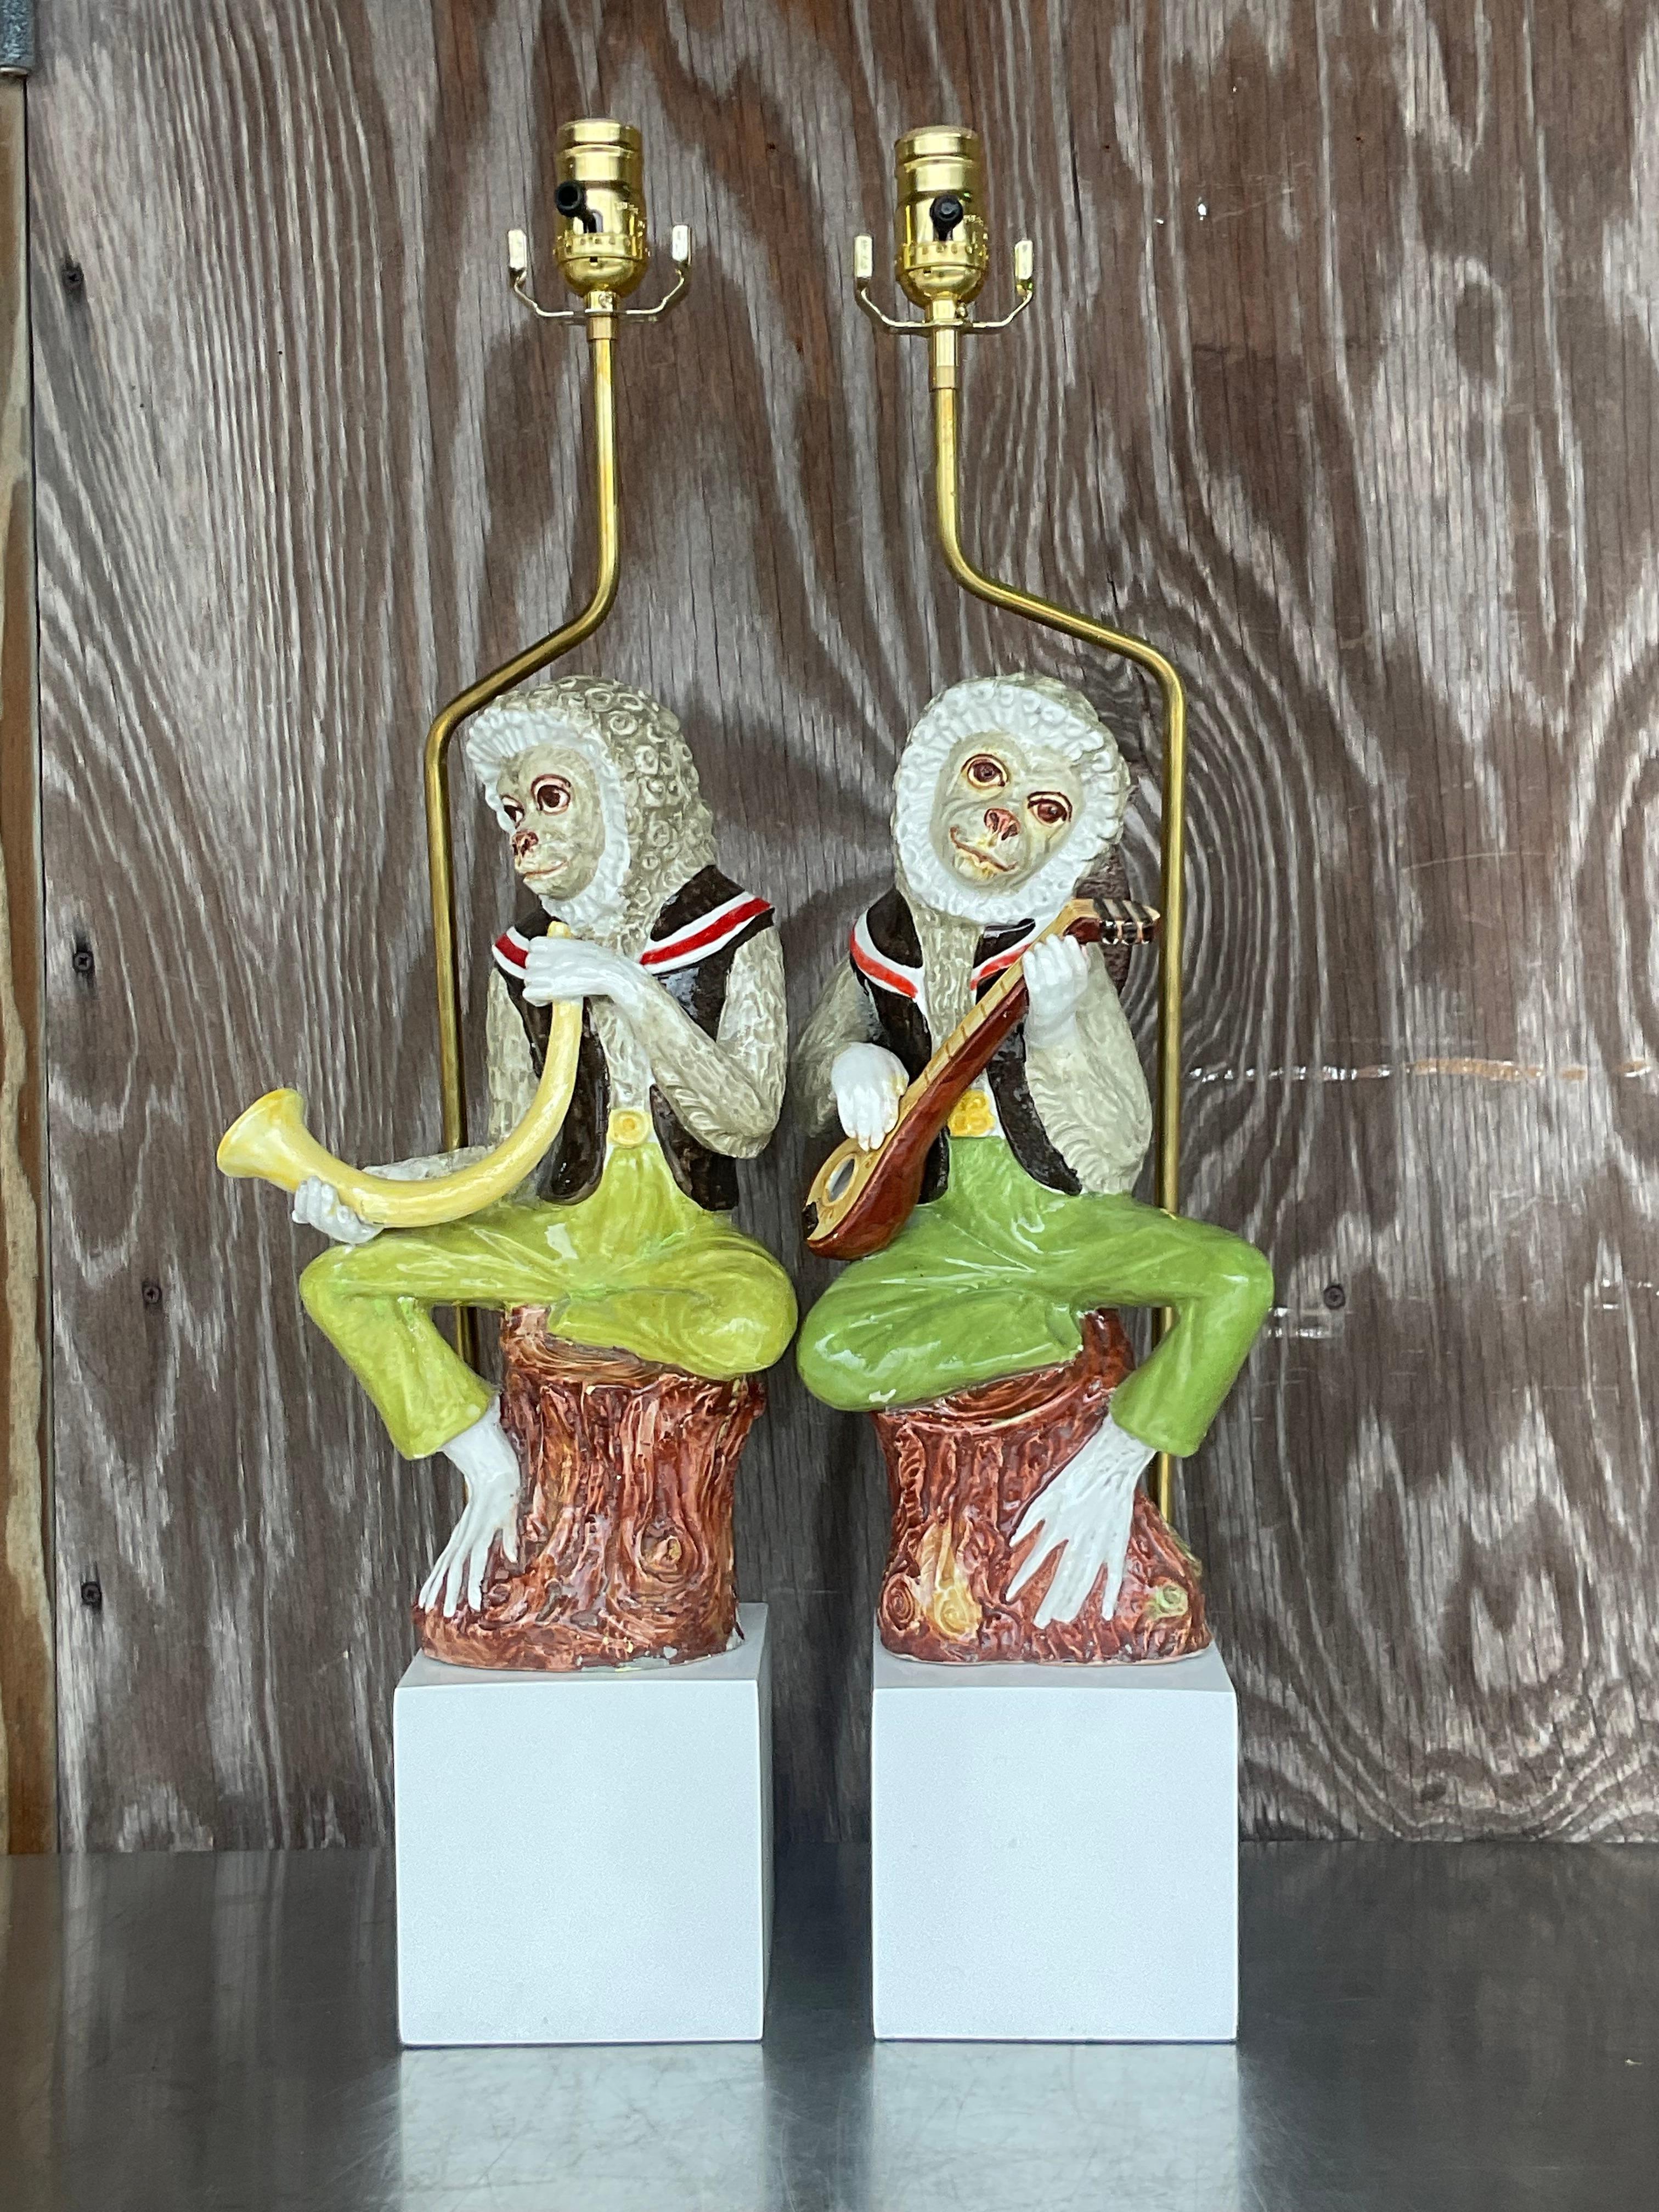 Une paire exceptionnelle de lampes de table Boho vintage. Une joyeuse paire de singes musiciens en céramique émaillée. Fabriqués et peints à la main. Entièrement restauré avec tous les nouveaux équipements, câblages et socles. Fabriquées en Italie.